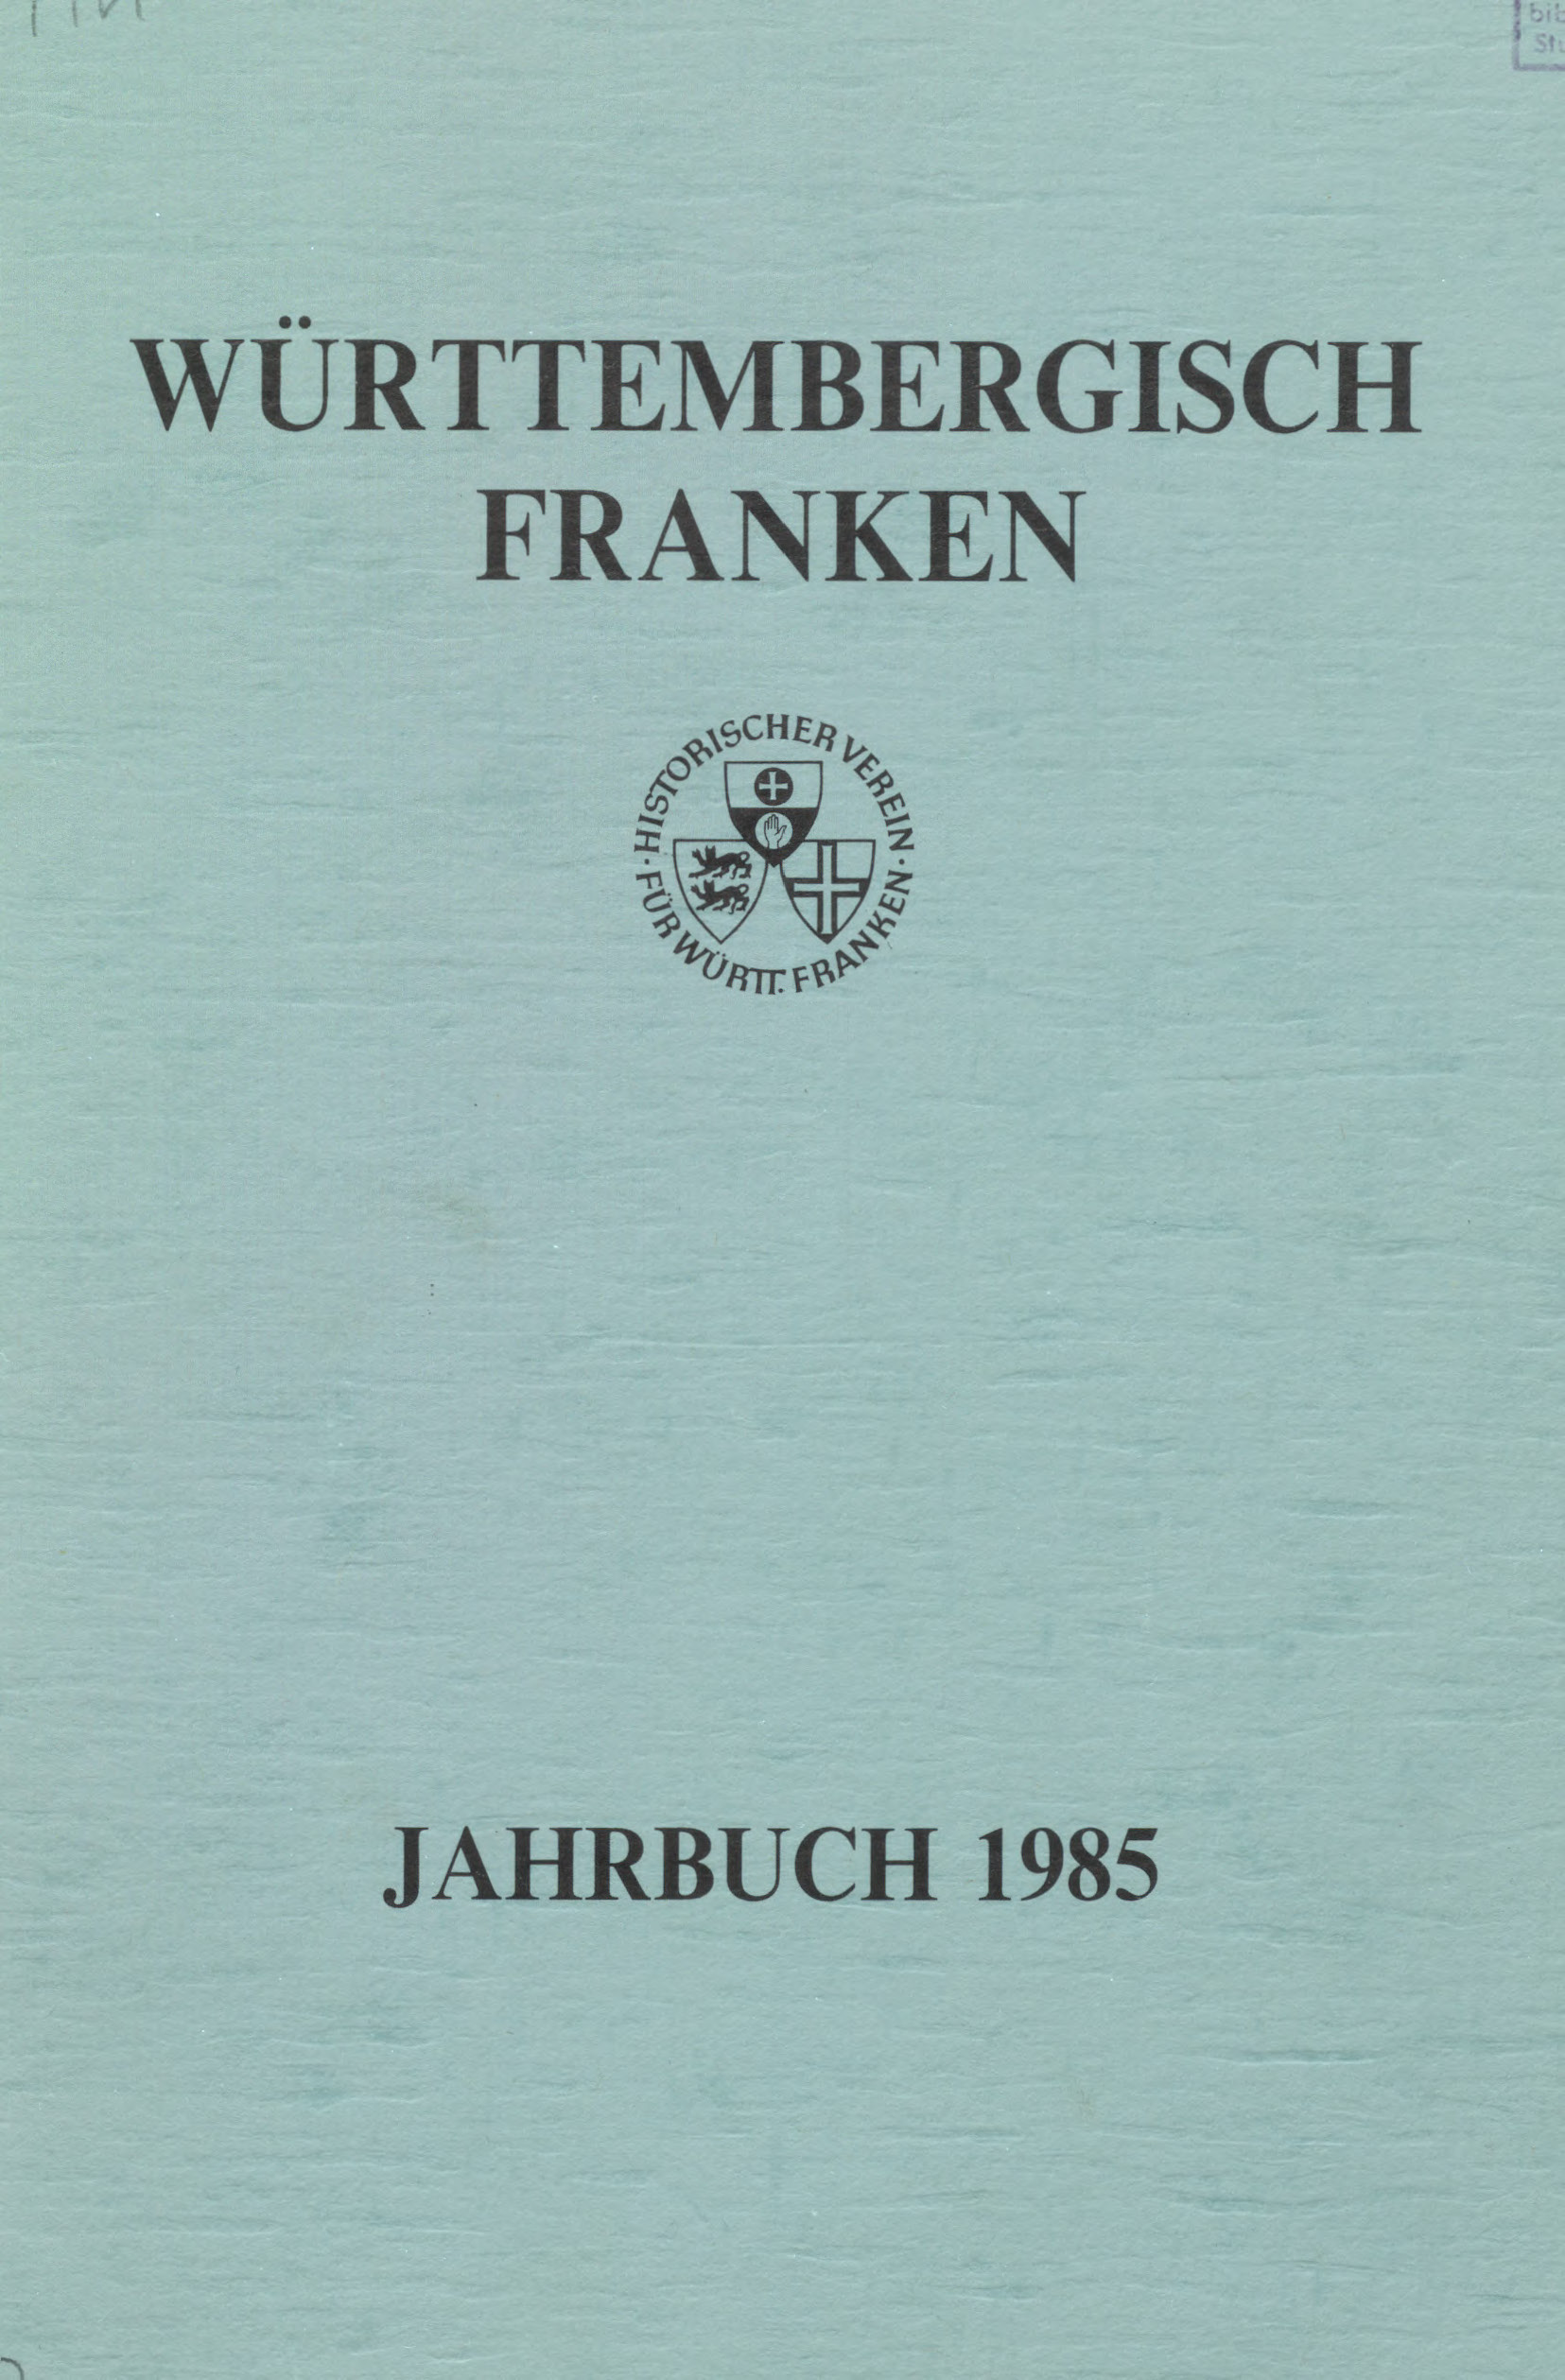                     Ansehen Bd. 69 (1985): Württembergisch Franken
                